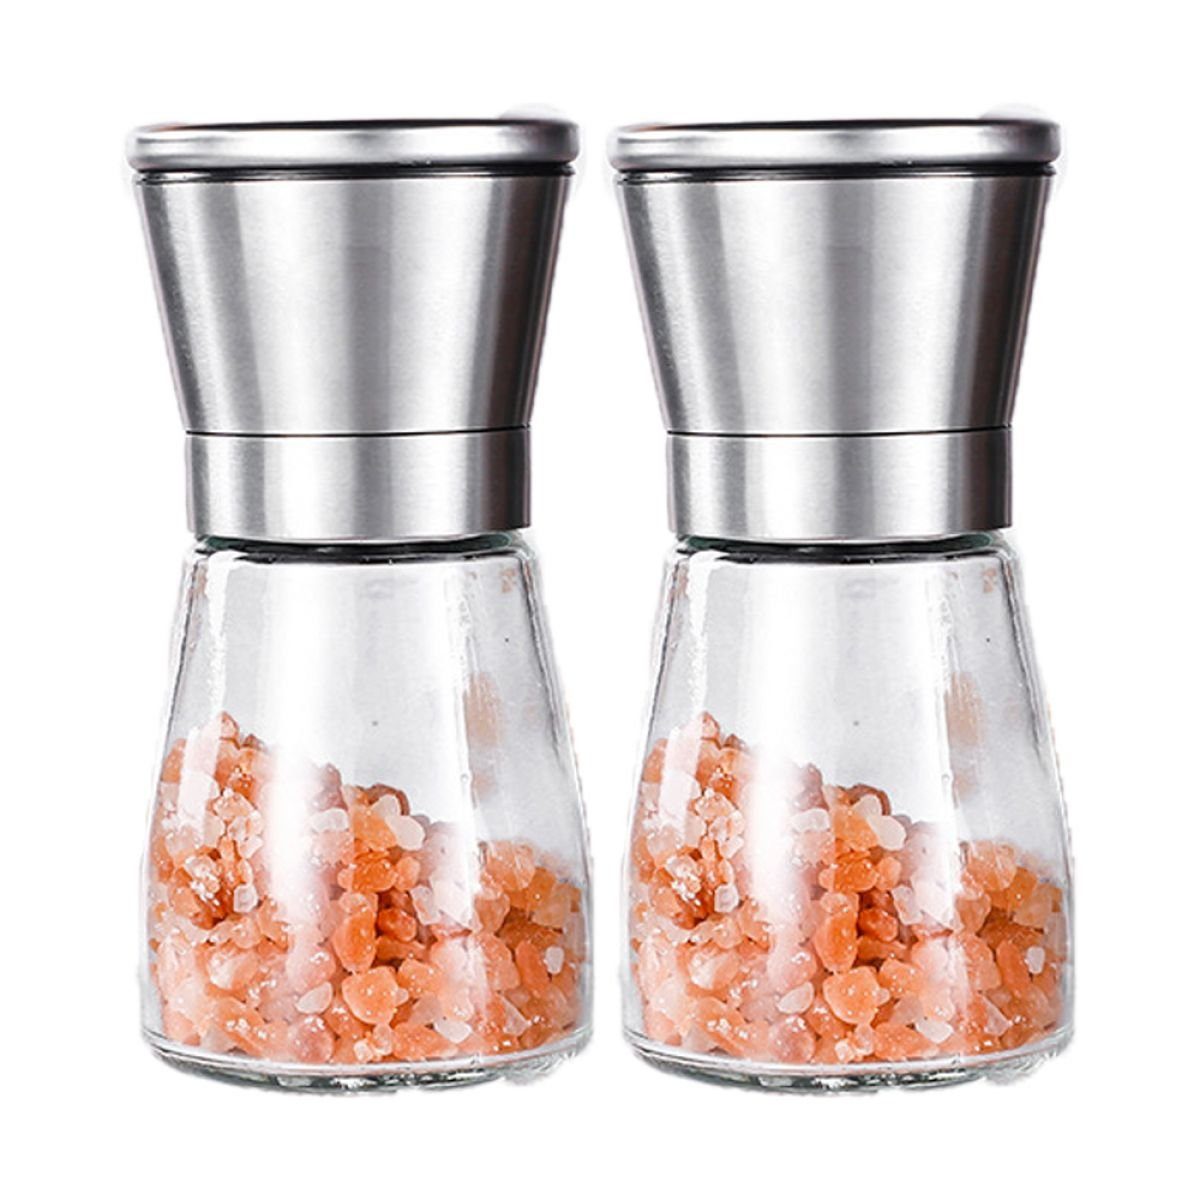 JedBesetzt Salz-/Pfeffermühle Gewürzmühle mit verstellbarem Mahlwerk - Salzmühle